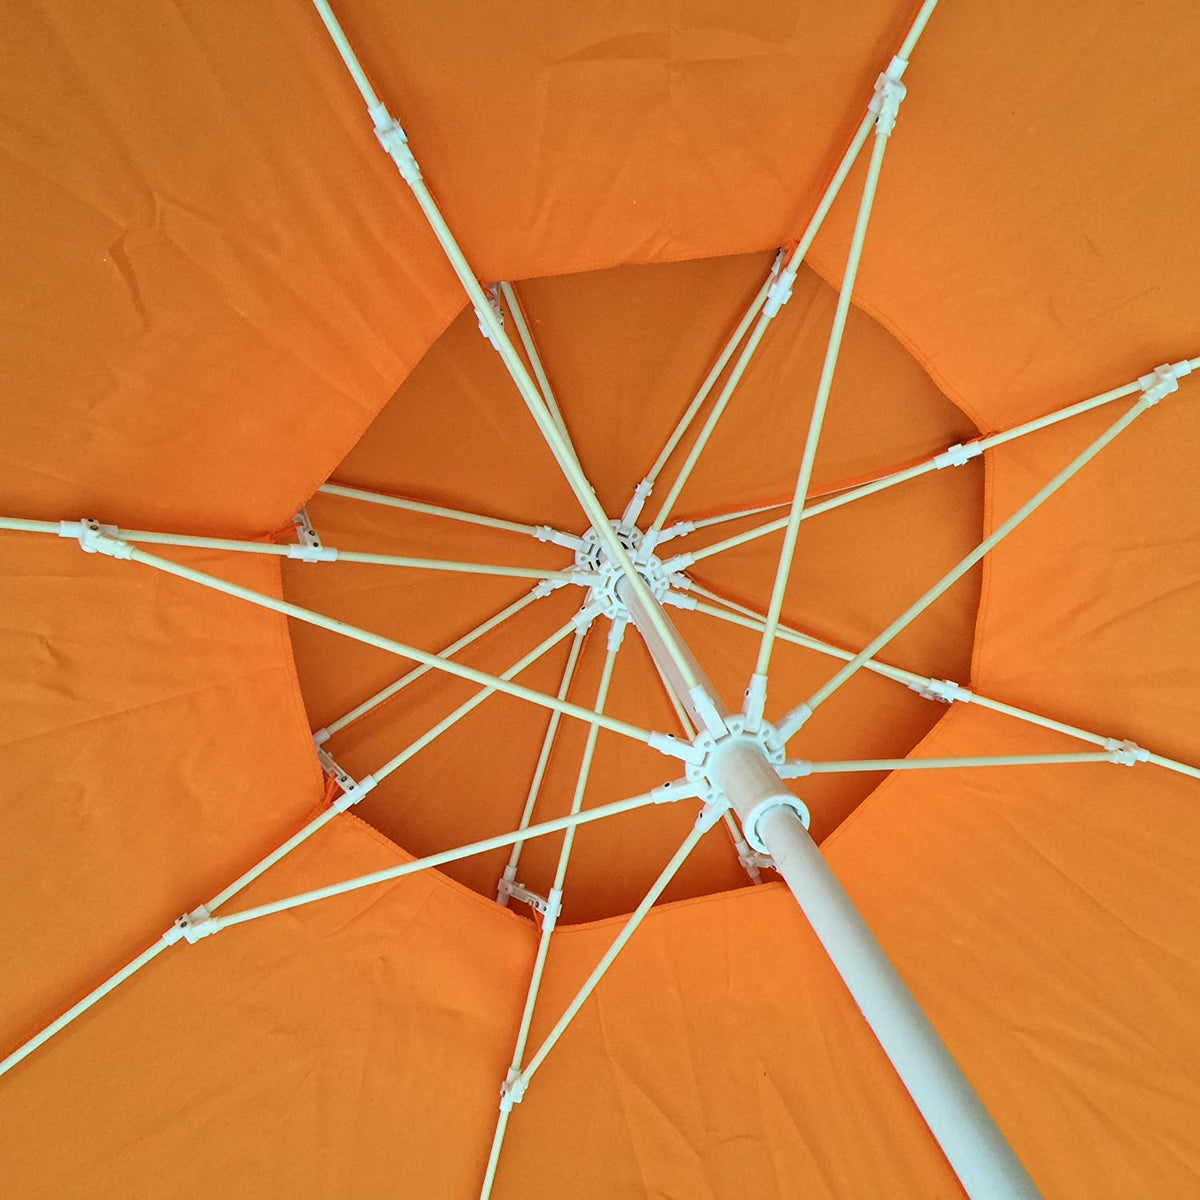 8 Ft Polyester Double Top Outdoor Patio Sun shade UV Protection SPF Market Umbrella (Orange Color)